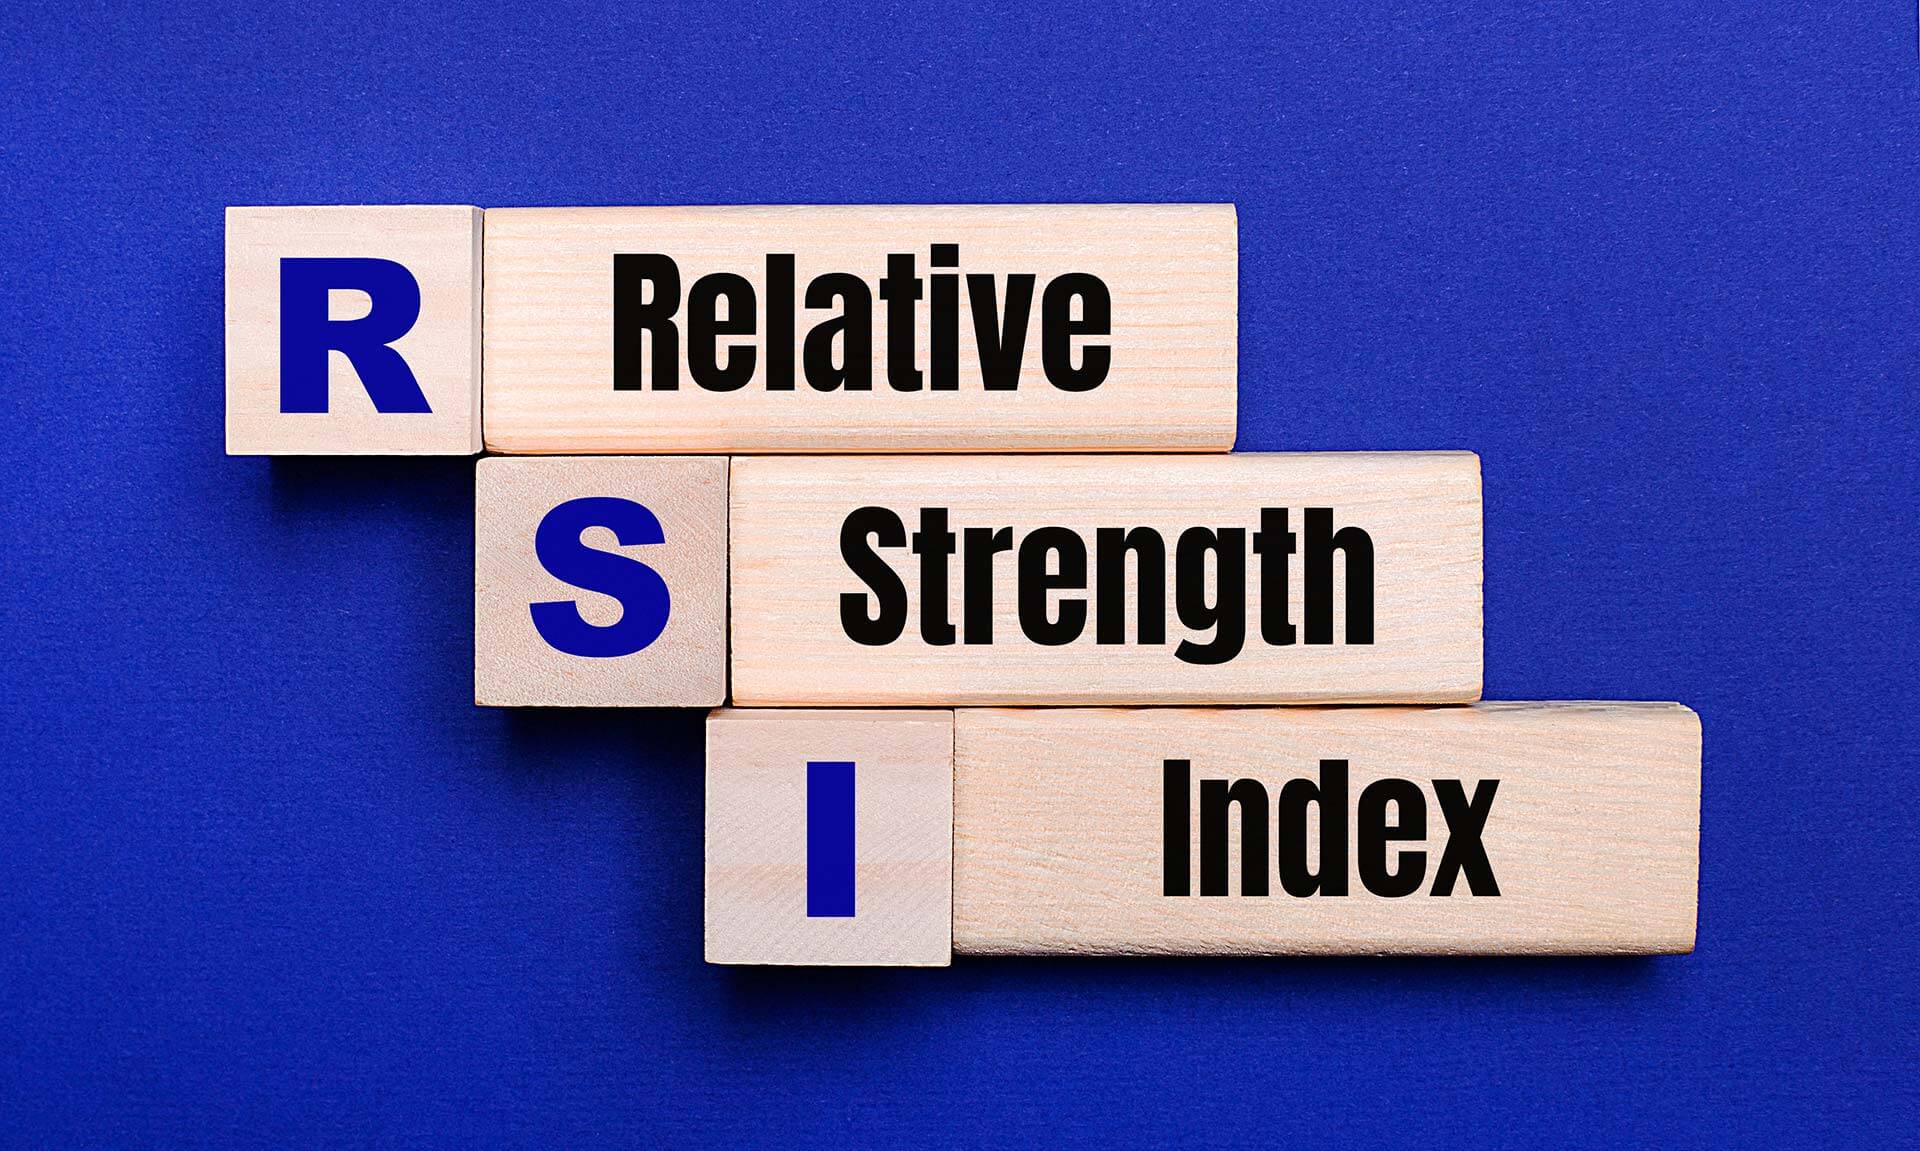 מה זה RSI? מתנד RSI, איך משתמשים ב Relative Strength Index (מדד העוצמה היחסית) במסחר שלנו?